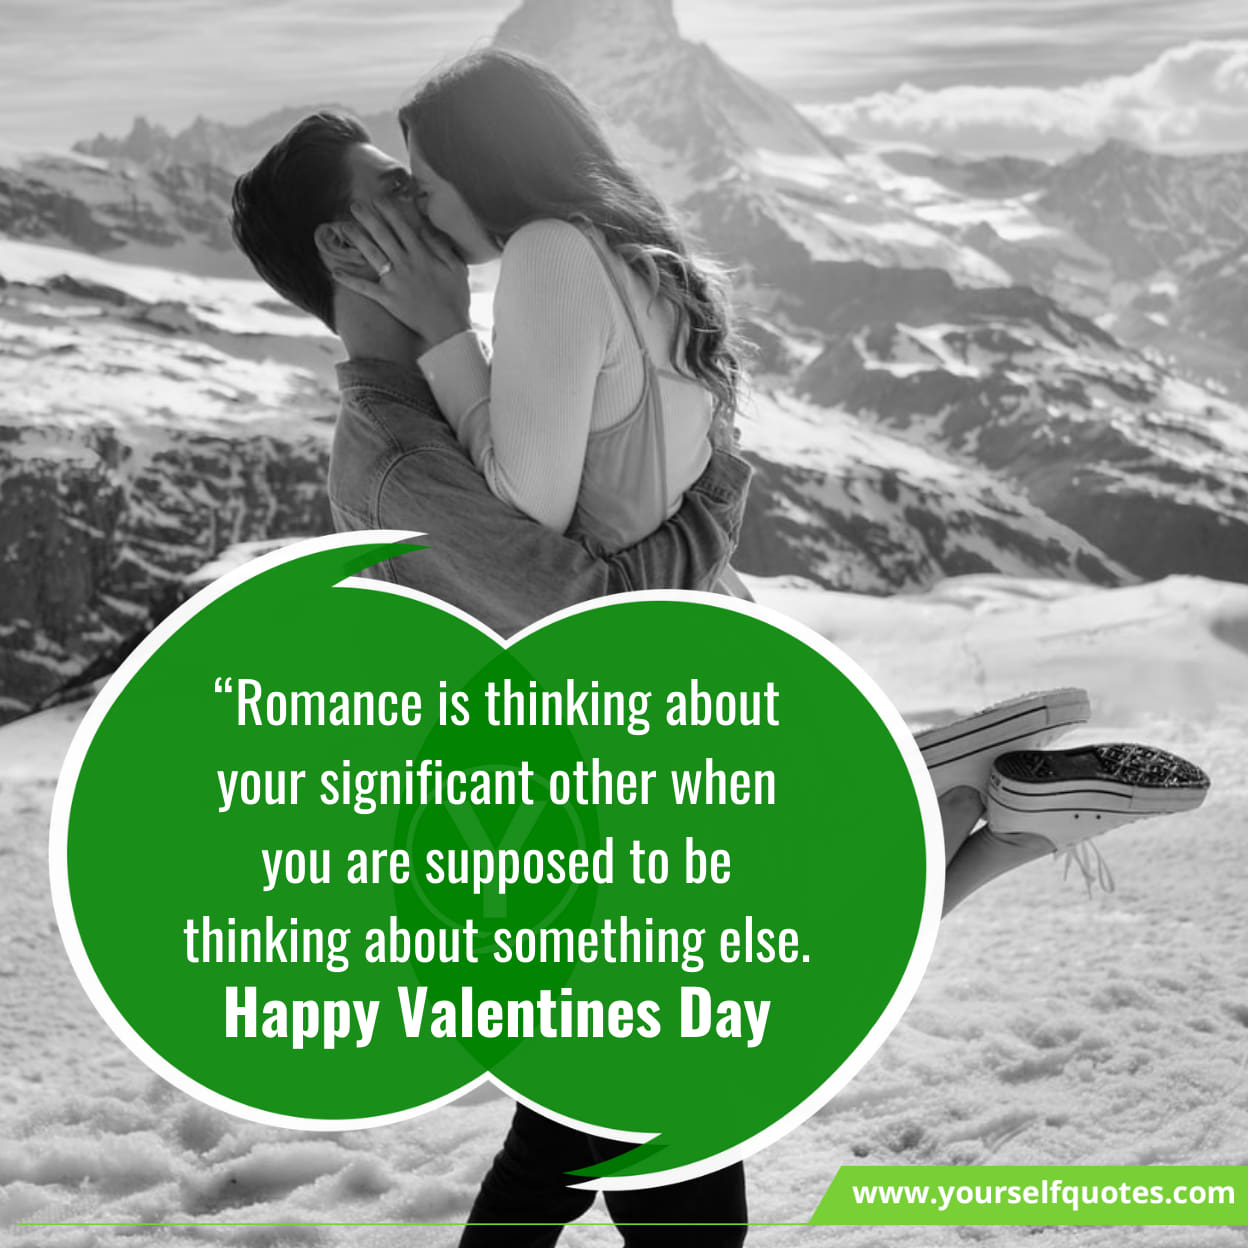 Valentines Day Messages for Boyfriend